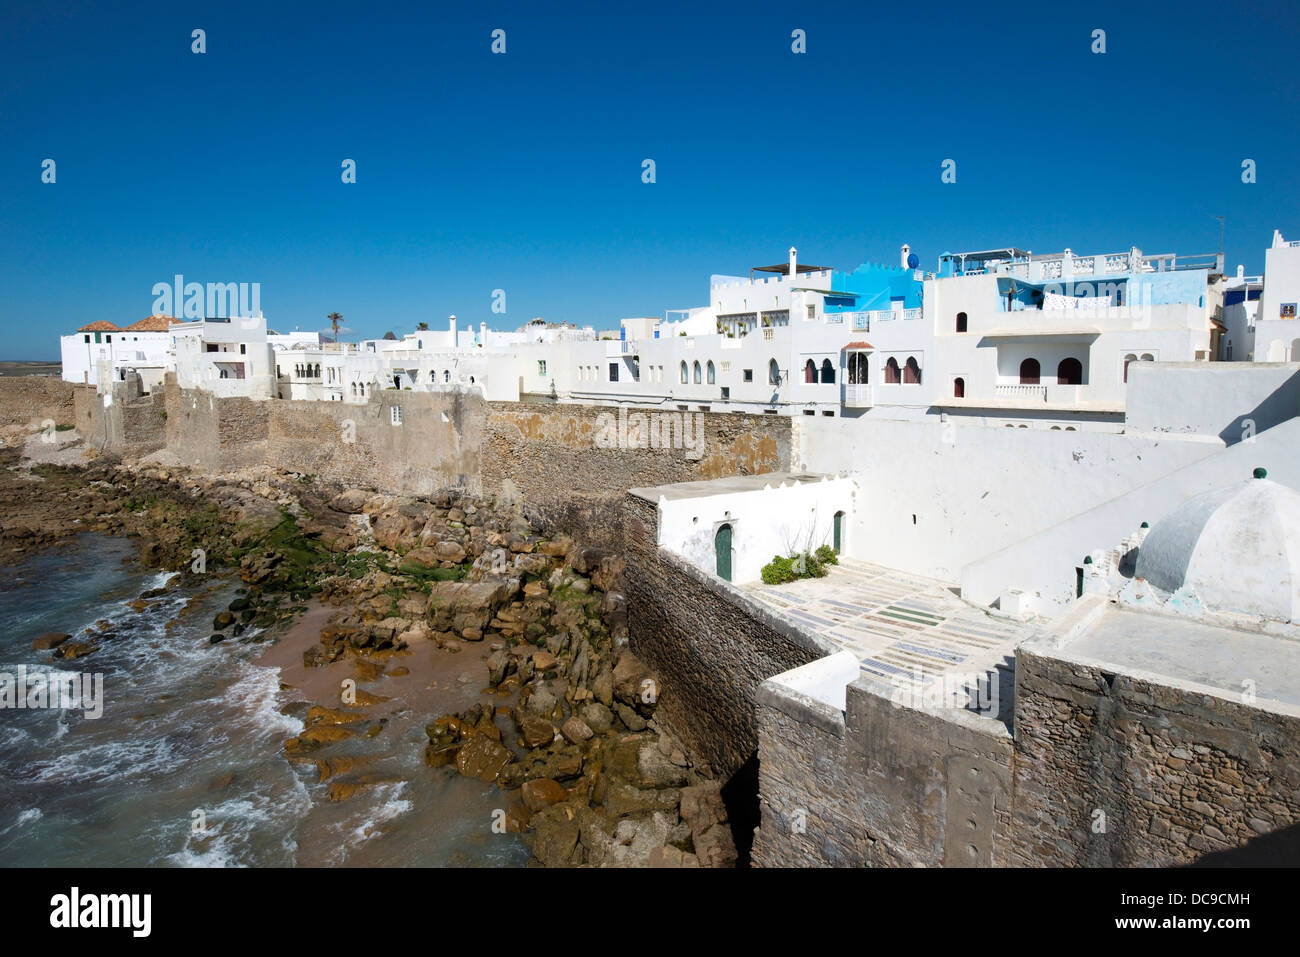 La ville côtière d'Asilah, au Maroc. Banque D'Images